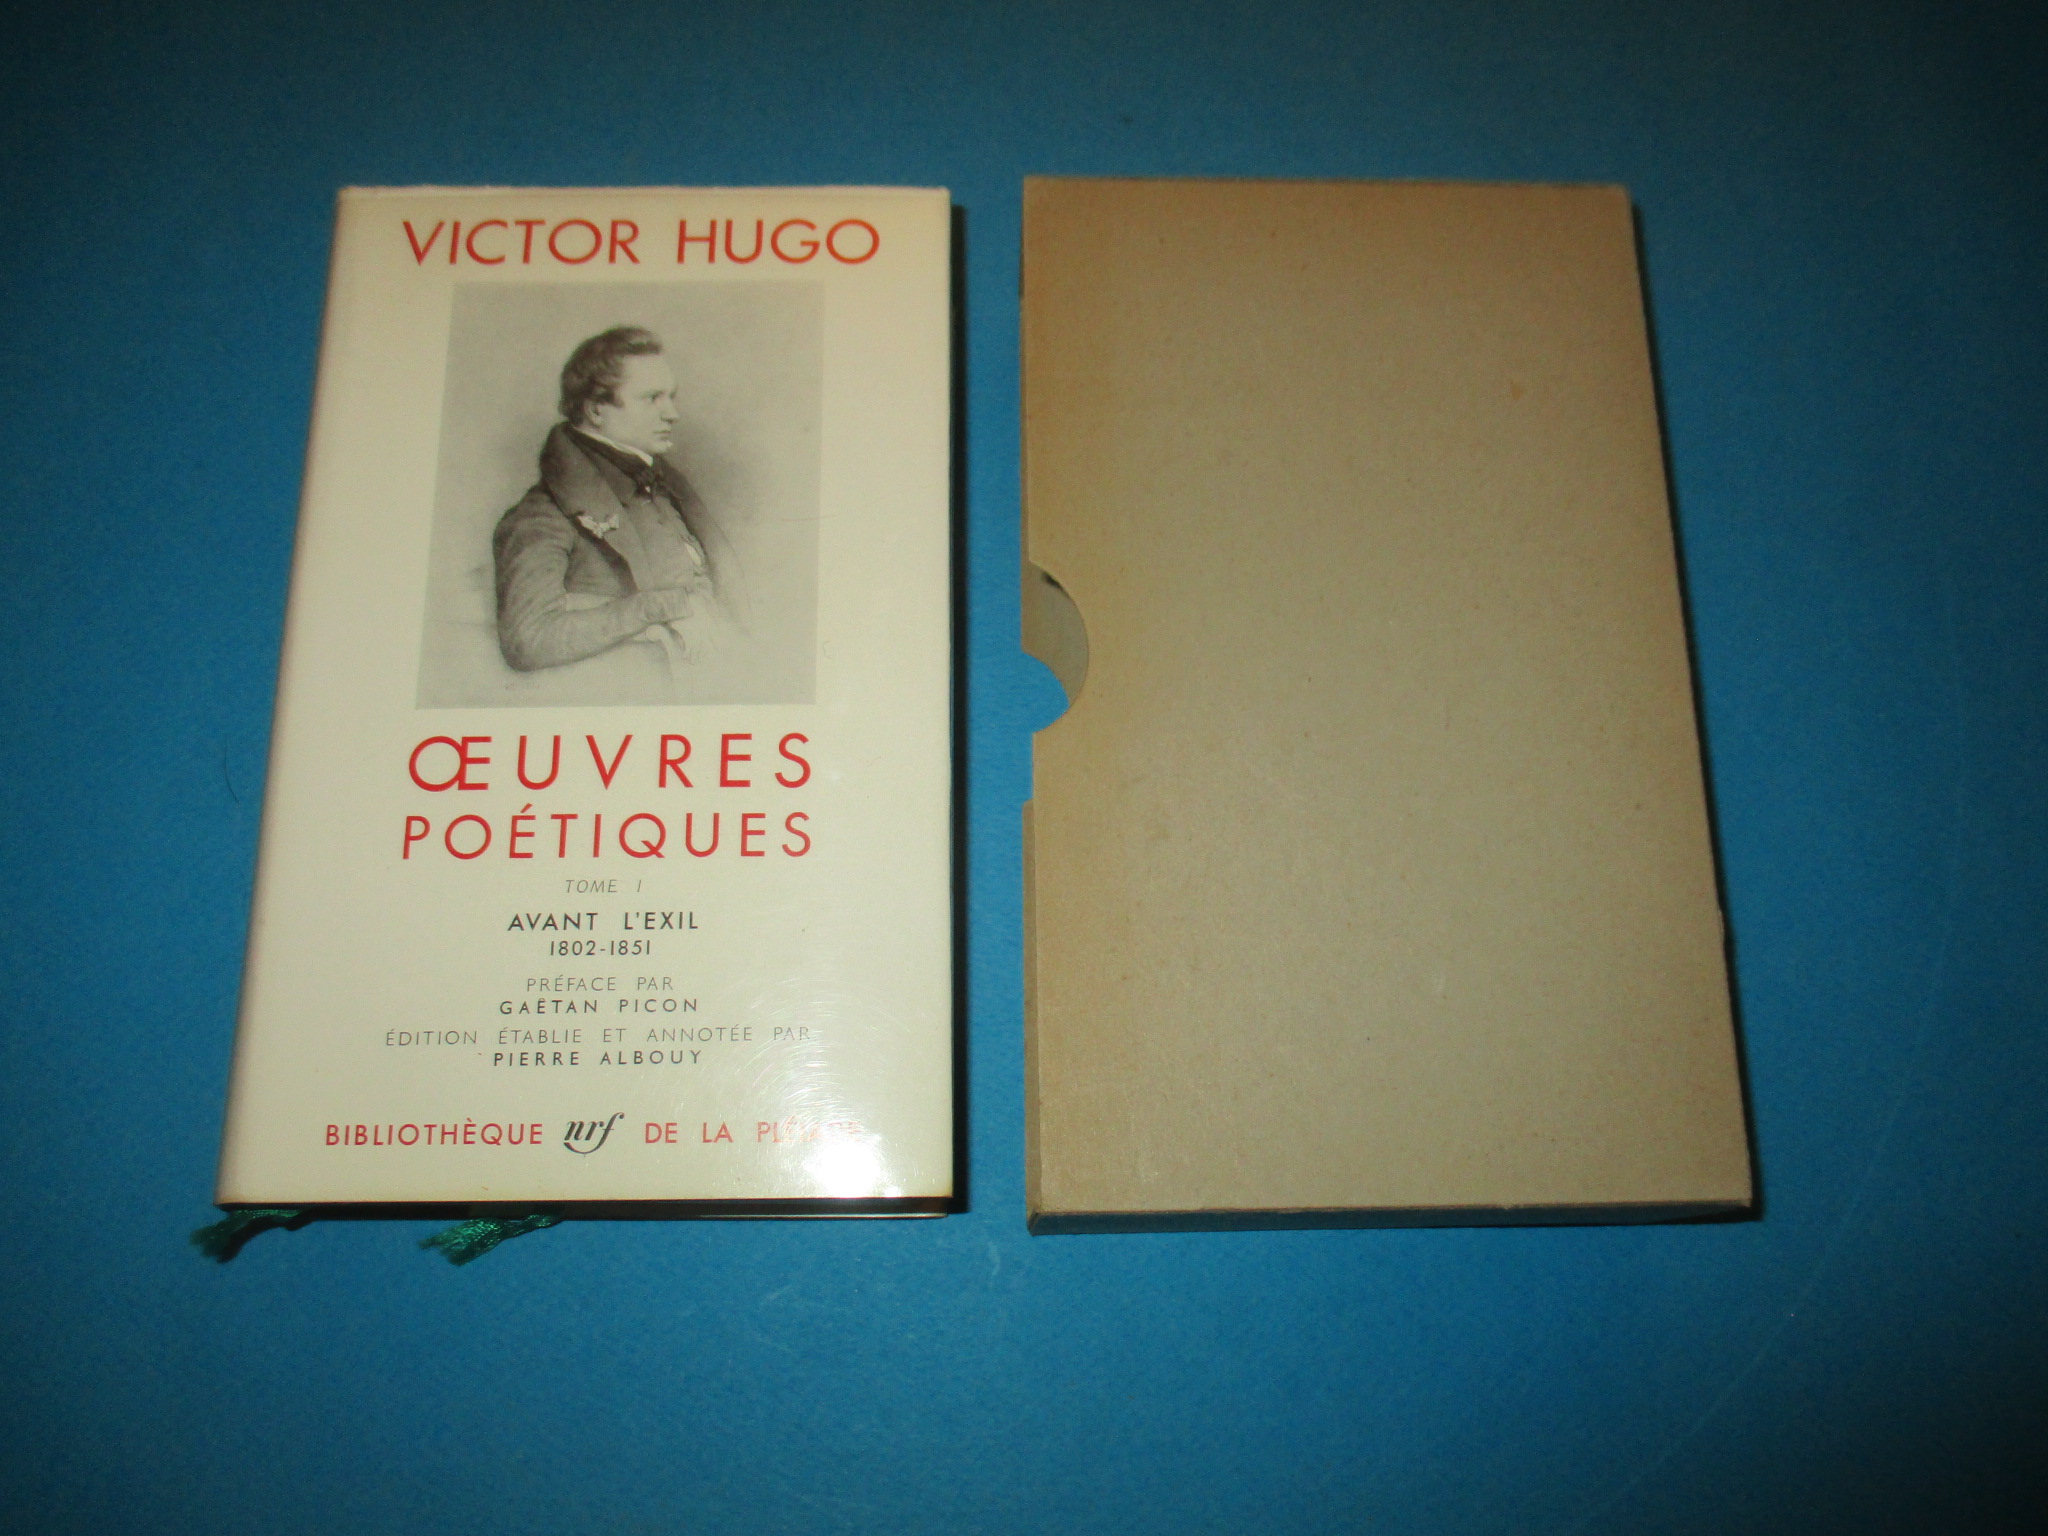 Oeuvres poétiques I, Avant l\'exil 1802 - 1851, tome 1, Victor Hugo, La Pléiade 1964